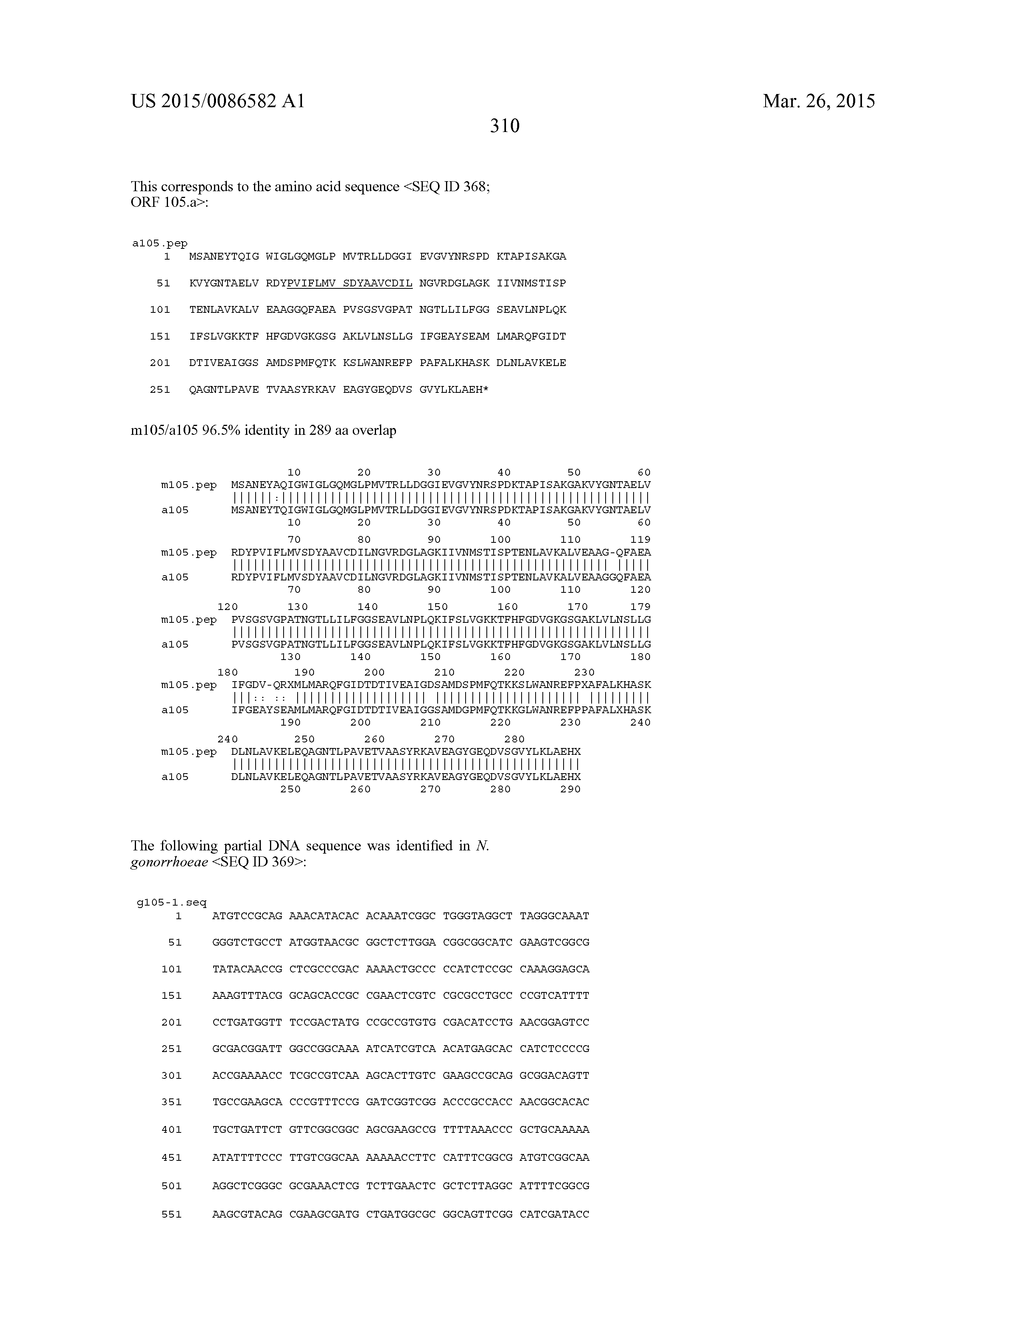 NEISSERIA MENINGITIDIS ANTIGENS AND COMPOSITIONS - diagram, schematic, and image 342